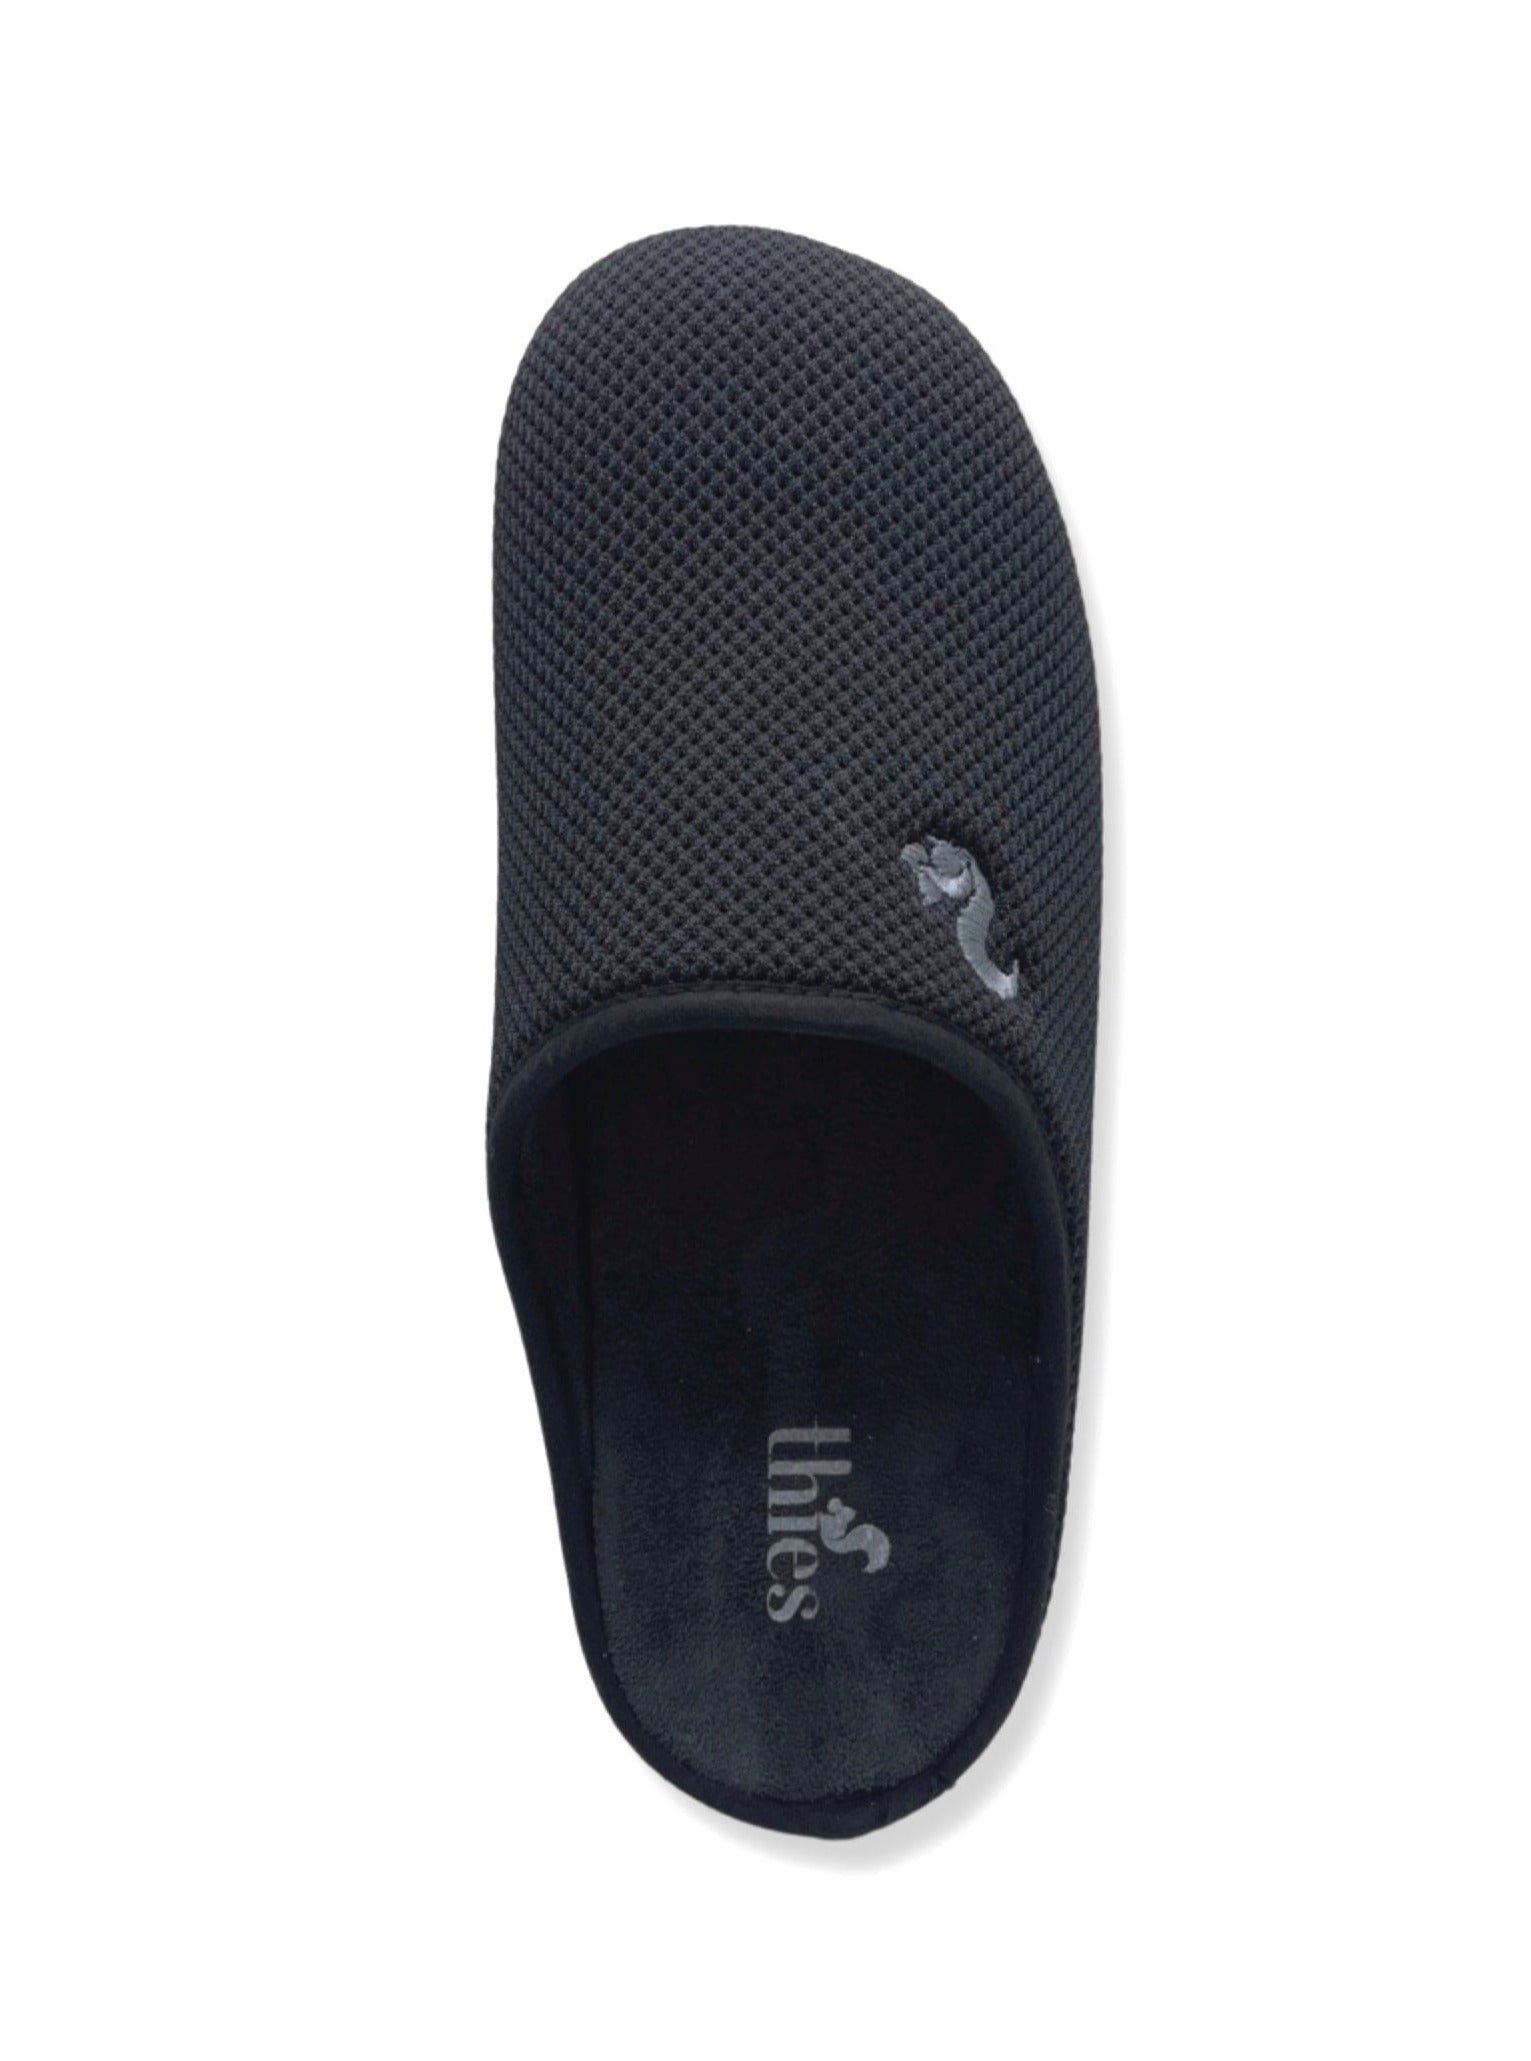 NAT 2 footwear thies 1856 ® Cornslipper vegansk sort aus Mais gefertigt (W/M/X) bæredygtig mode etisk mode